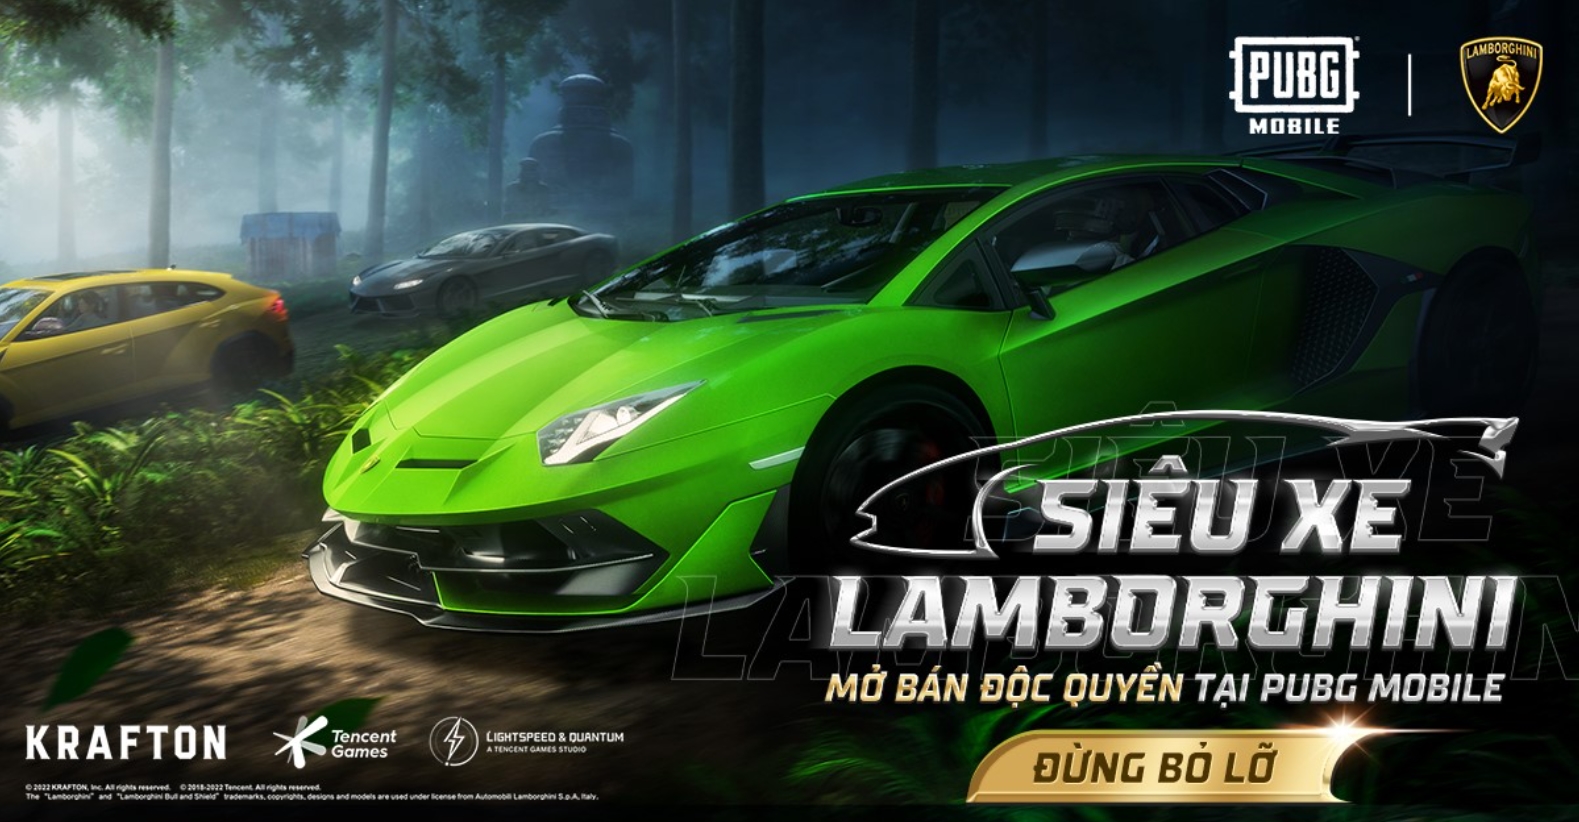 Lamborghini bắt tay PUBG Mobile, đưa dàn siêu xe vào trong game